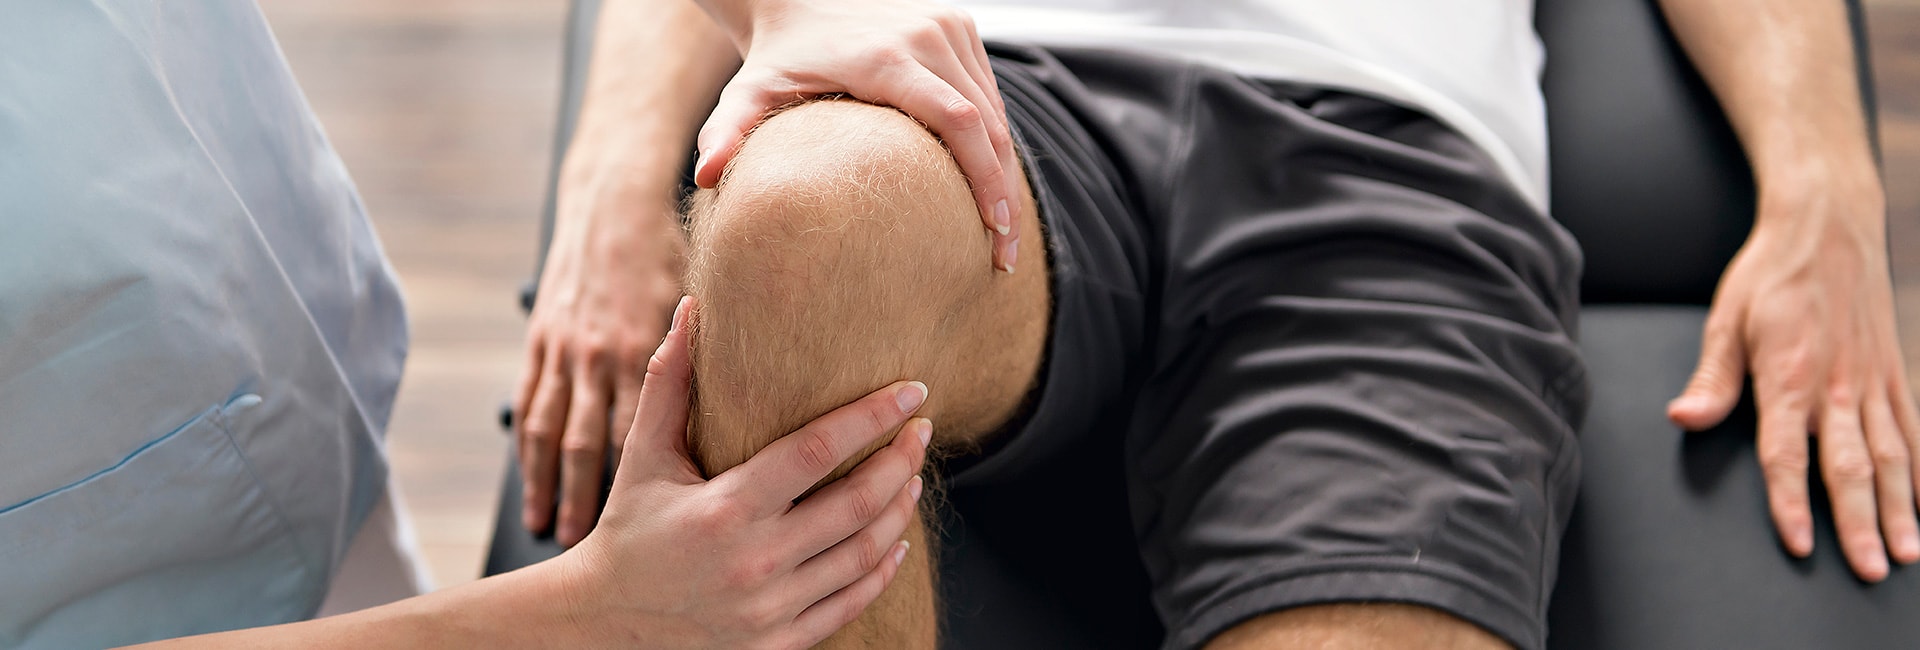 Therapists examines patients knee